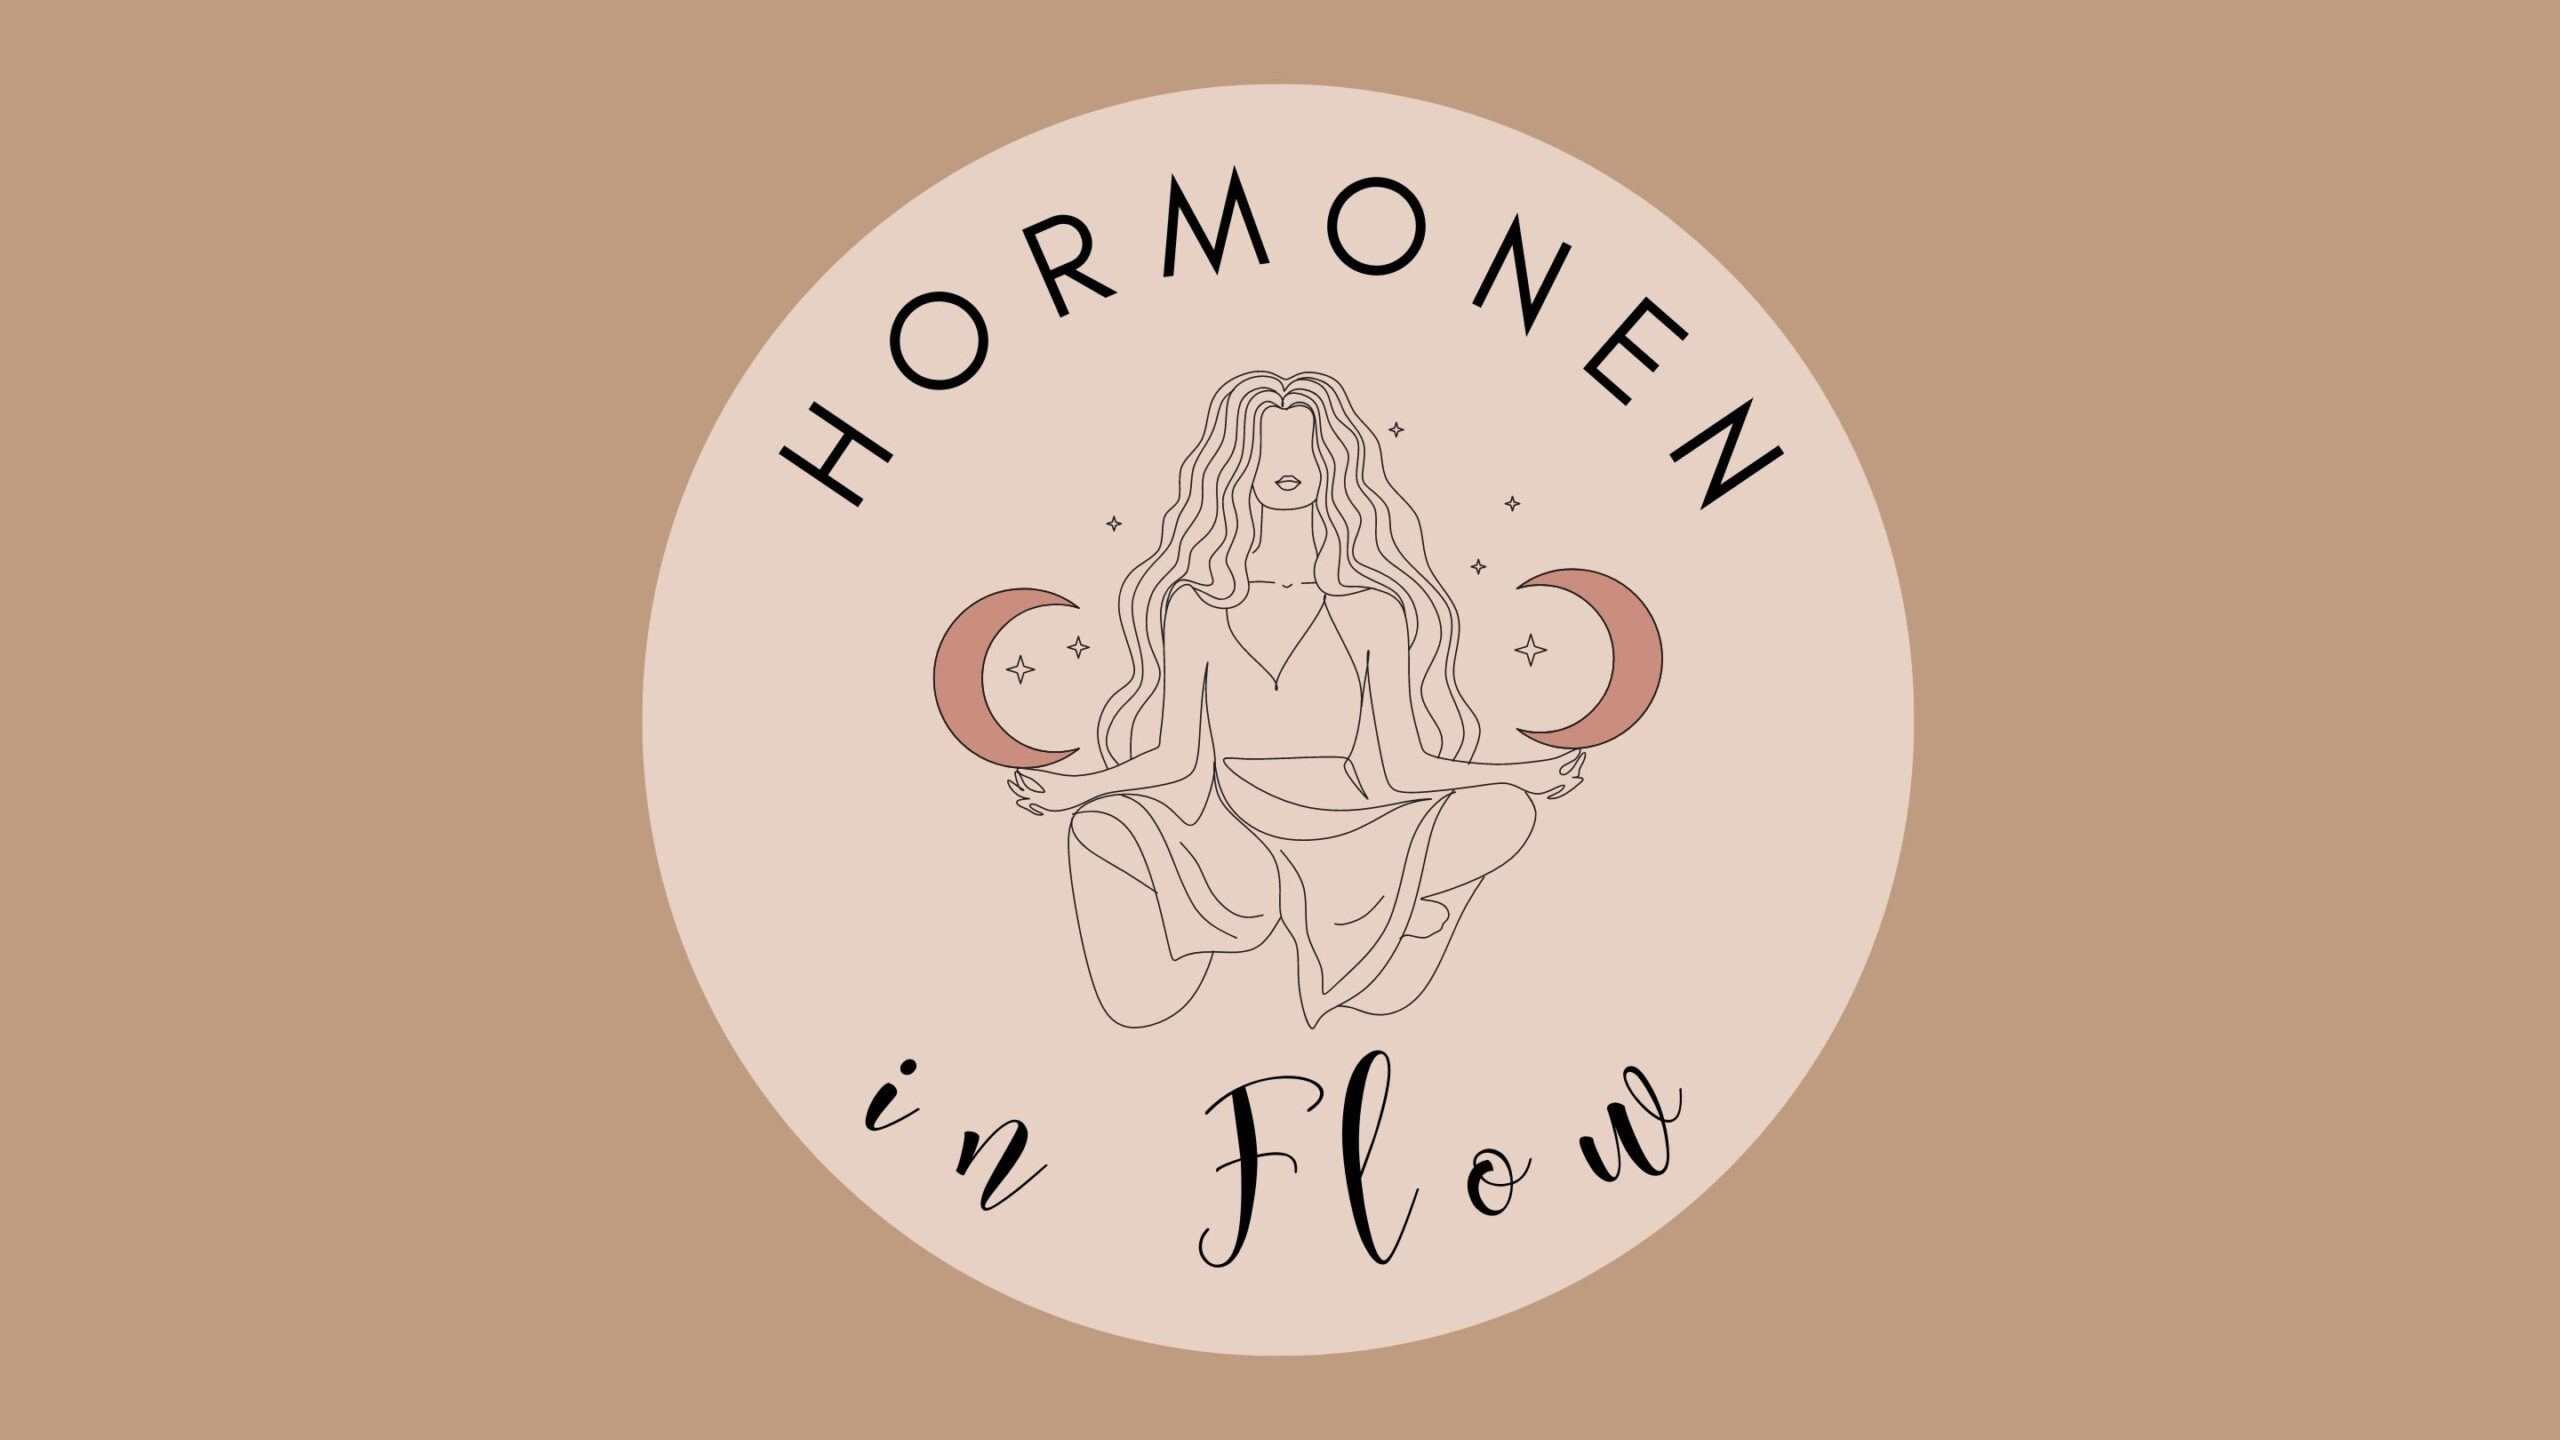 HORMONEN IN FLOW